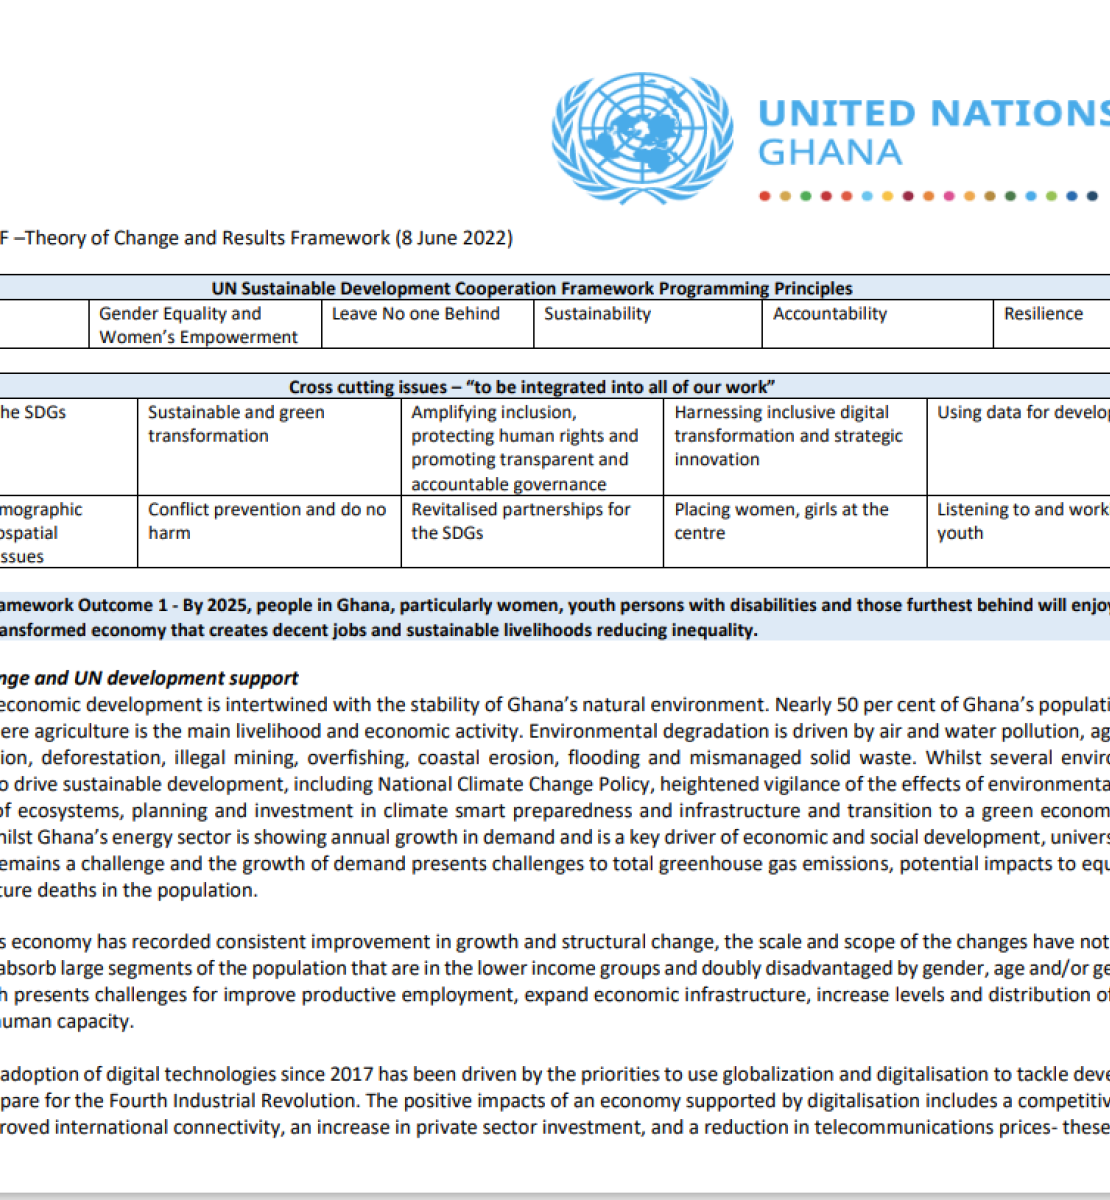 La portada consiste en un cuadro con el marco de resultados del MCNUDS.  El fondo es blanco, con texto negro.  El logotipo del equipo de las Naciones Unidas en el país aparece en la parte superior derecha.